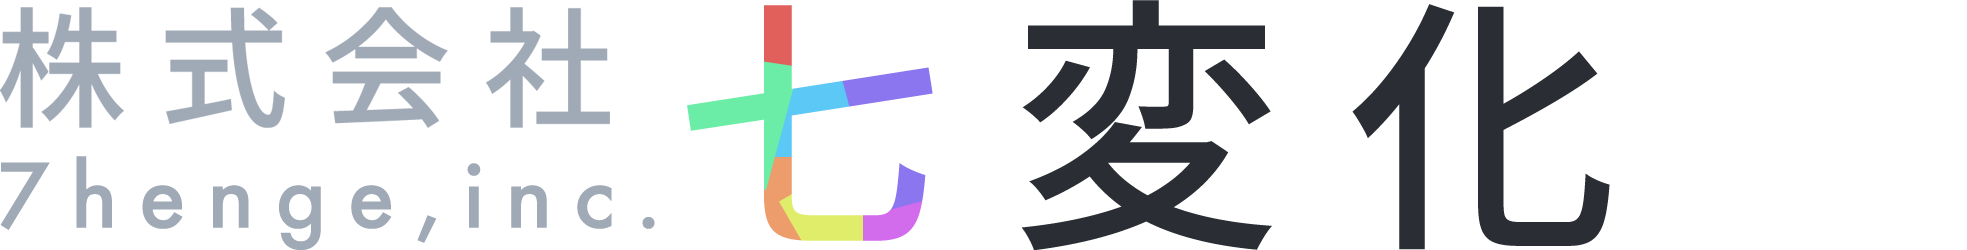 株式会社七変化のロゴ